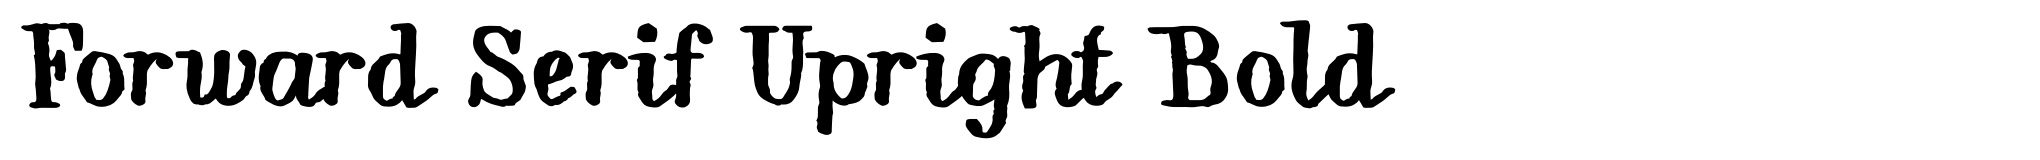 Forward Serif Upright Bold image